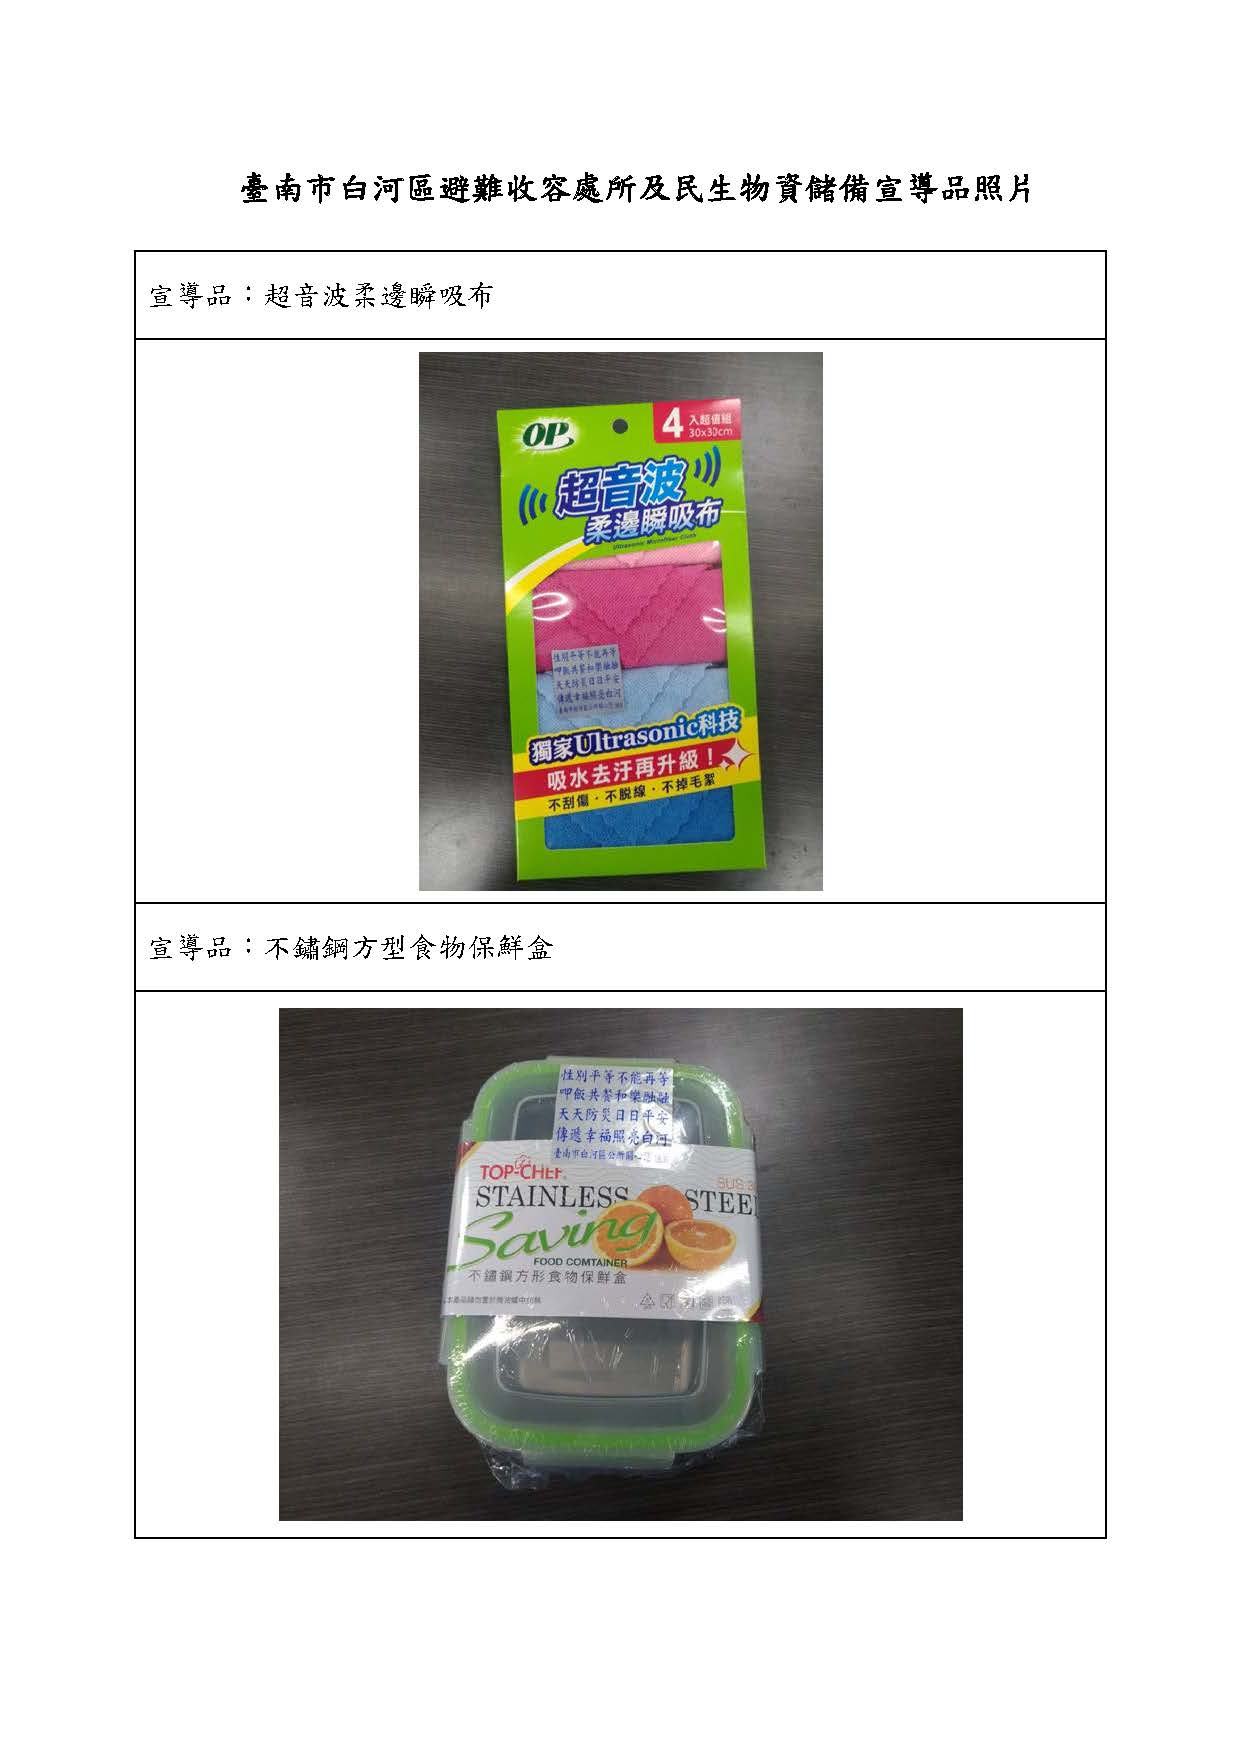 臺南市白河宣導品照片-柔邊瞬吸布及食物保鮮盒